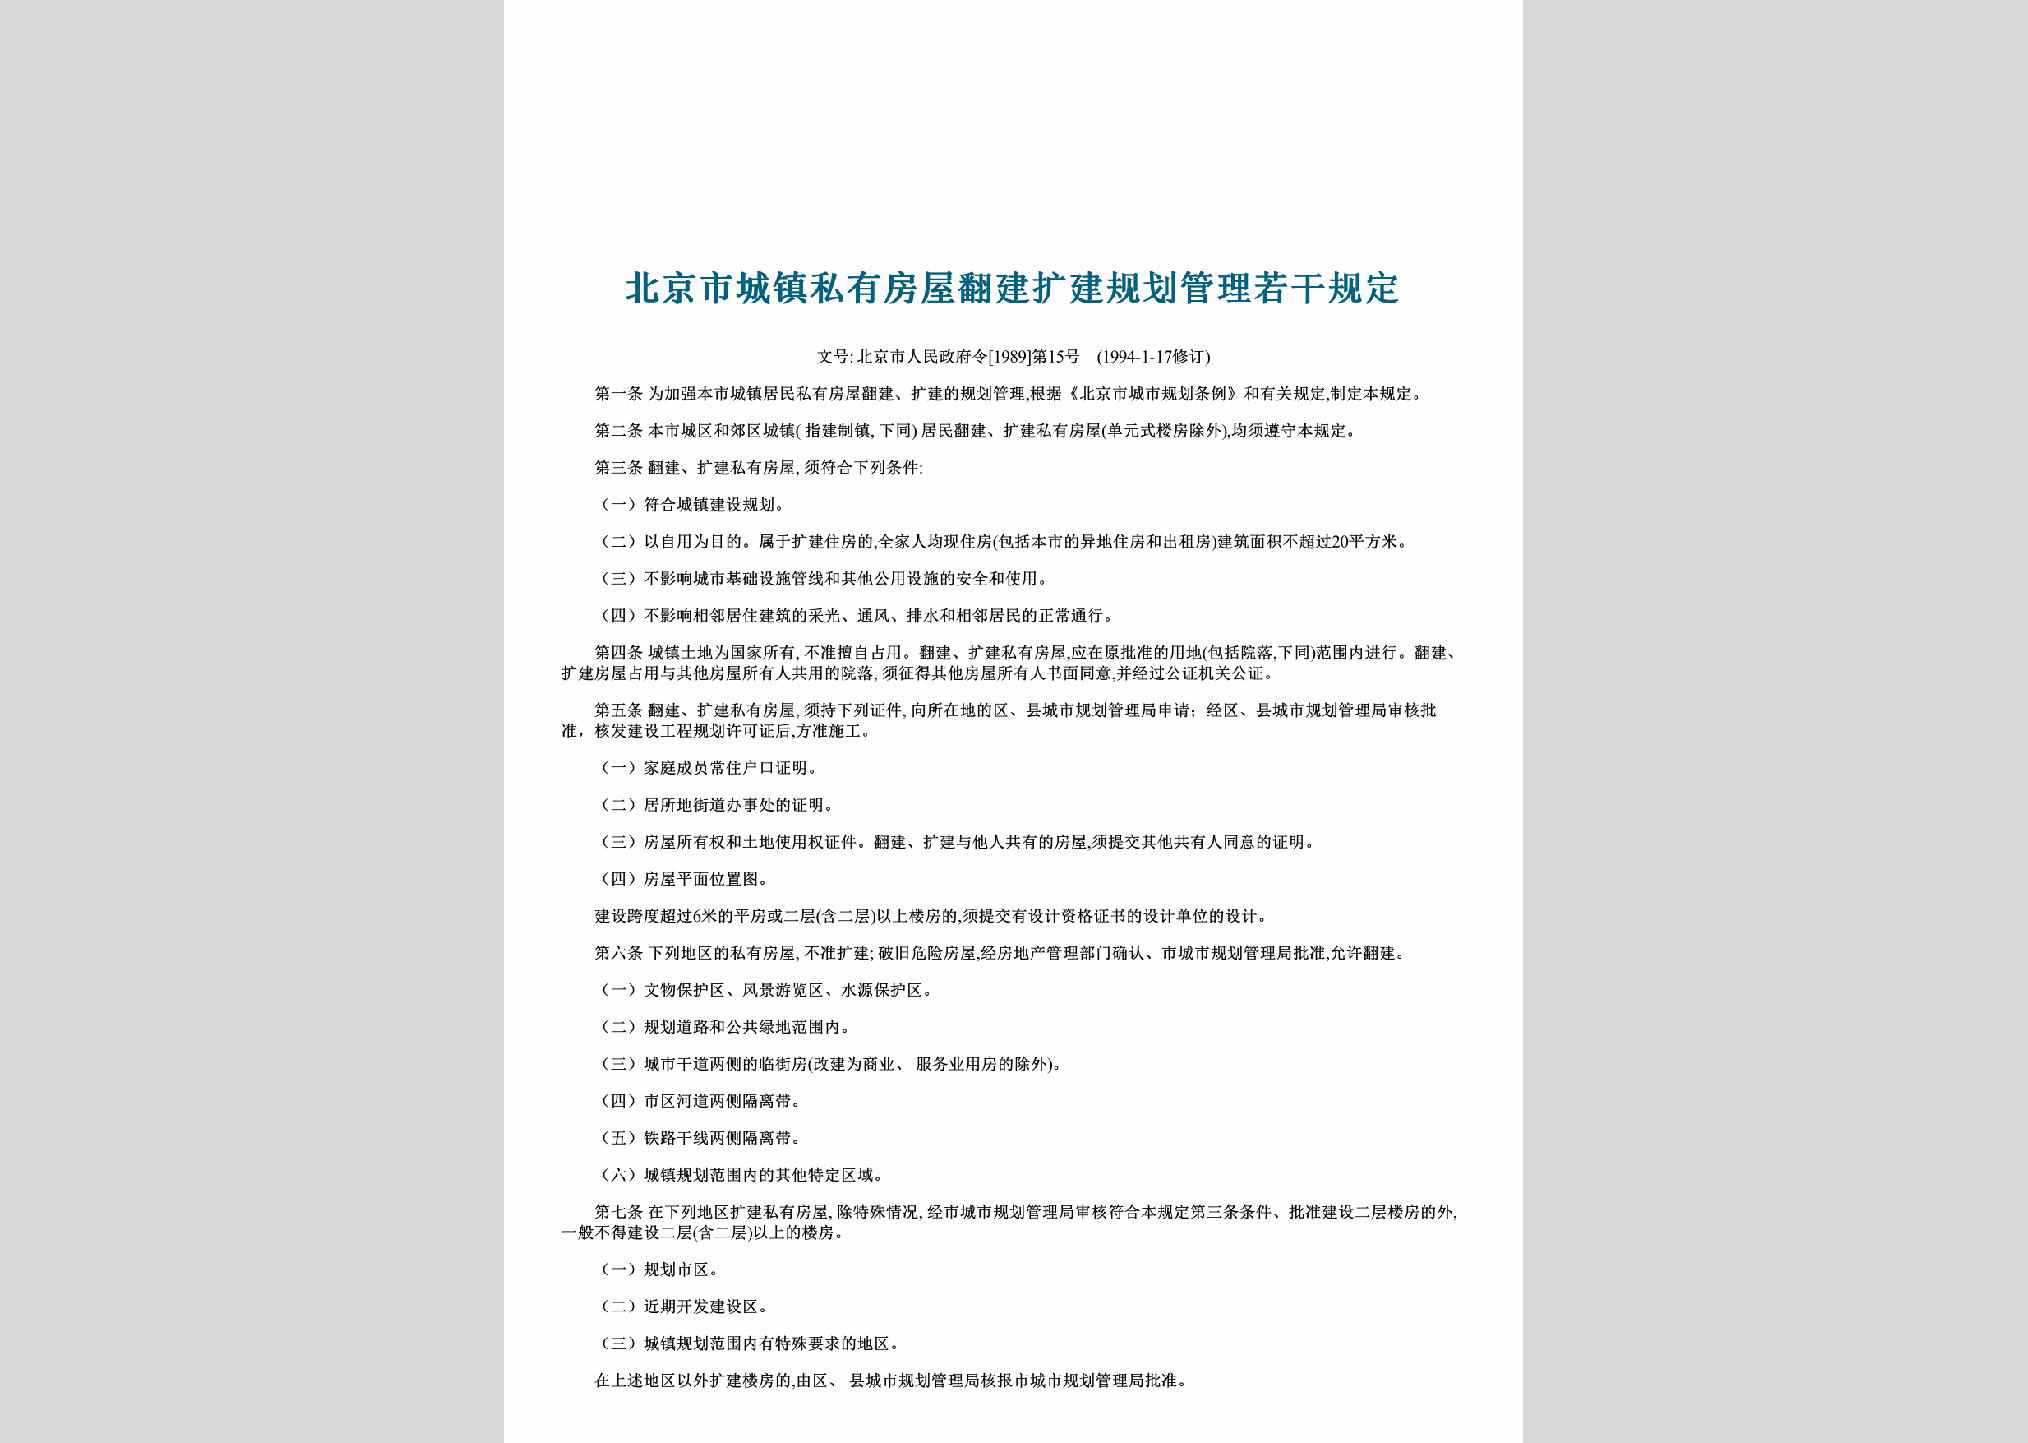 北京市人民政府令[1989]第15号：北京市城镇私有房屋翻建扩建规划管理若干规定